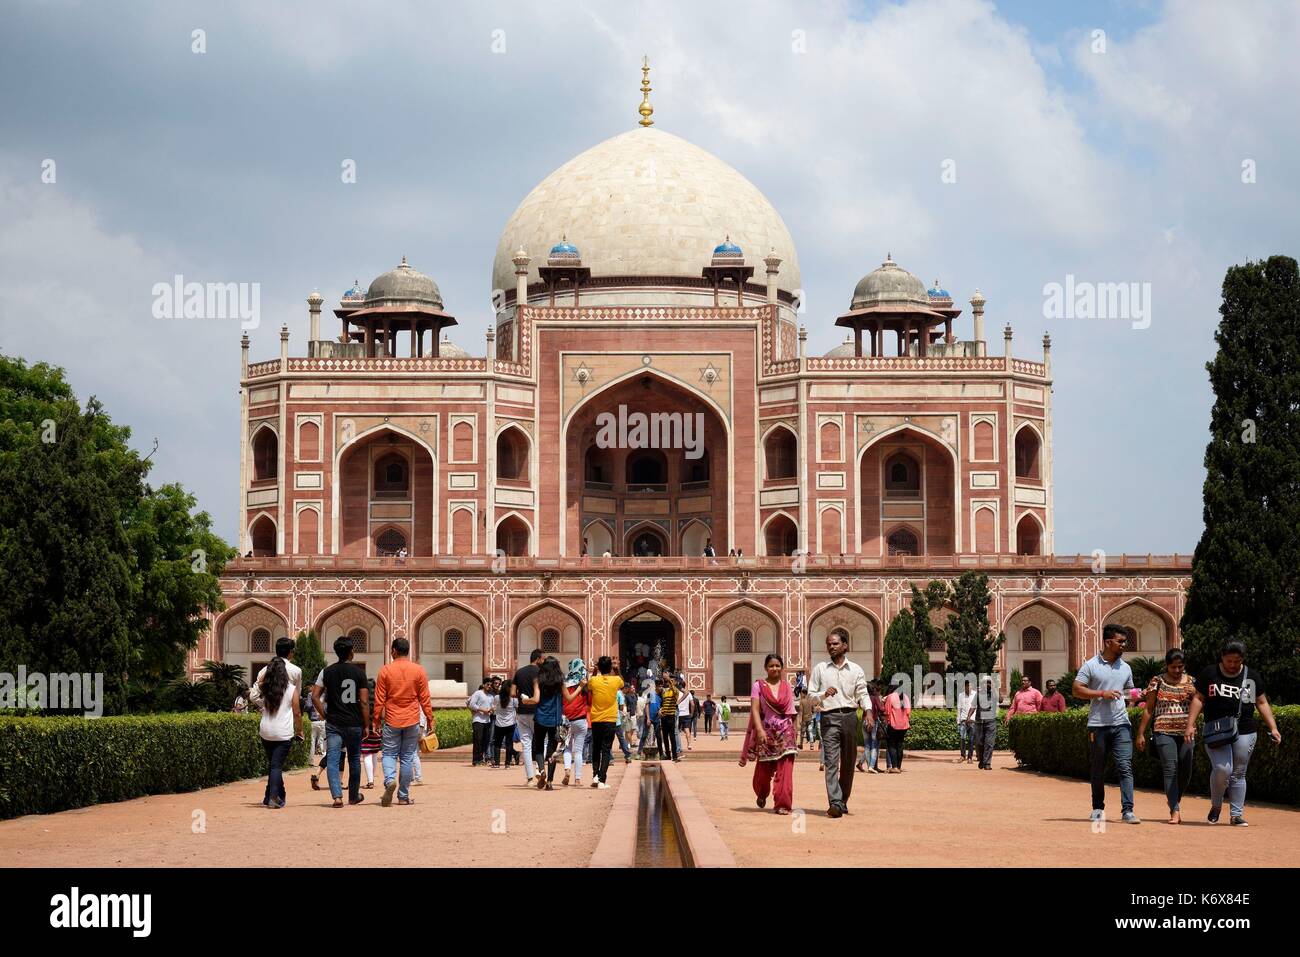 India, Delhi, Imperatore la tomba di Humayun, cinquecentesca tomba Mughal elencati come patrimonio mondiale dall' UNESCO Foto Stock